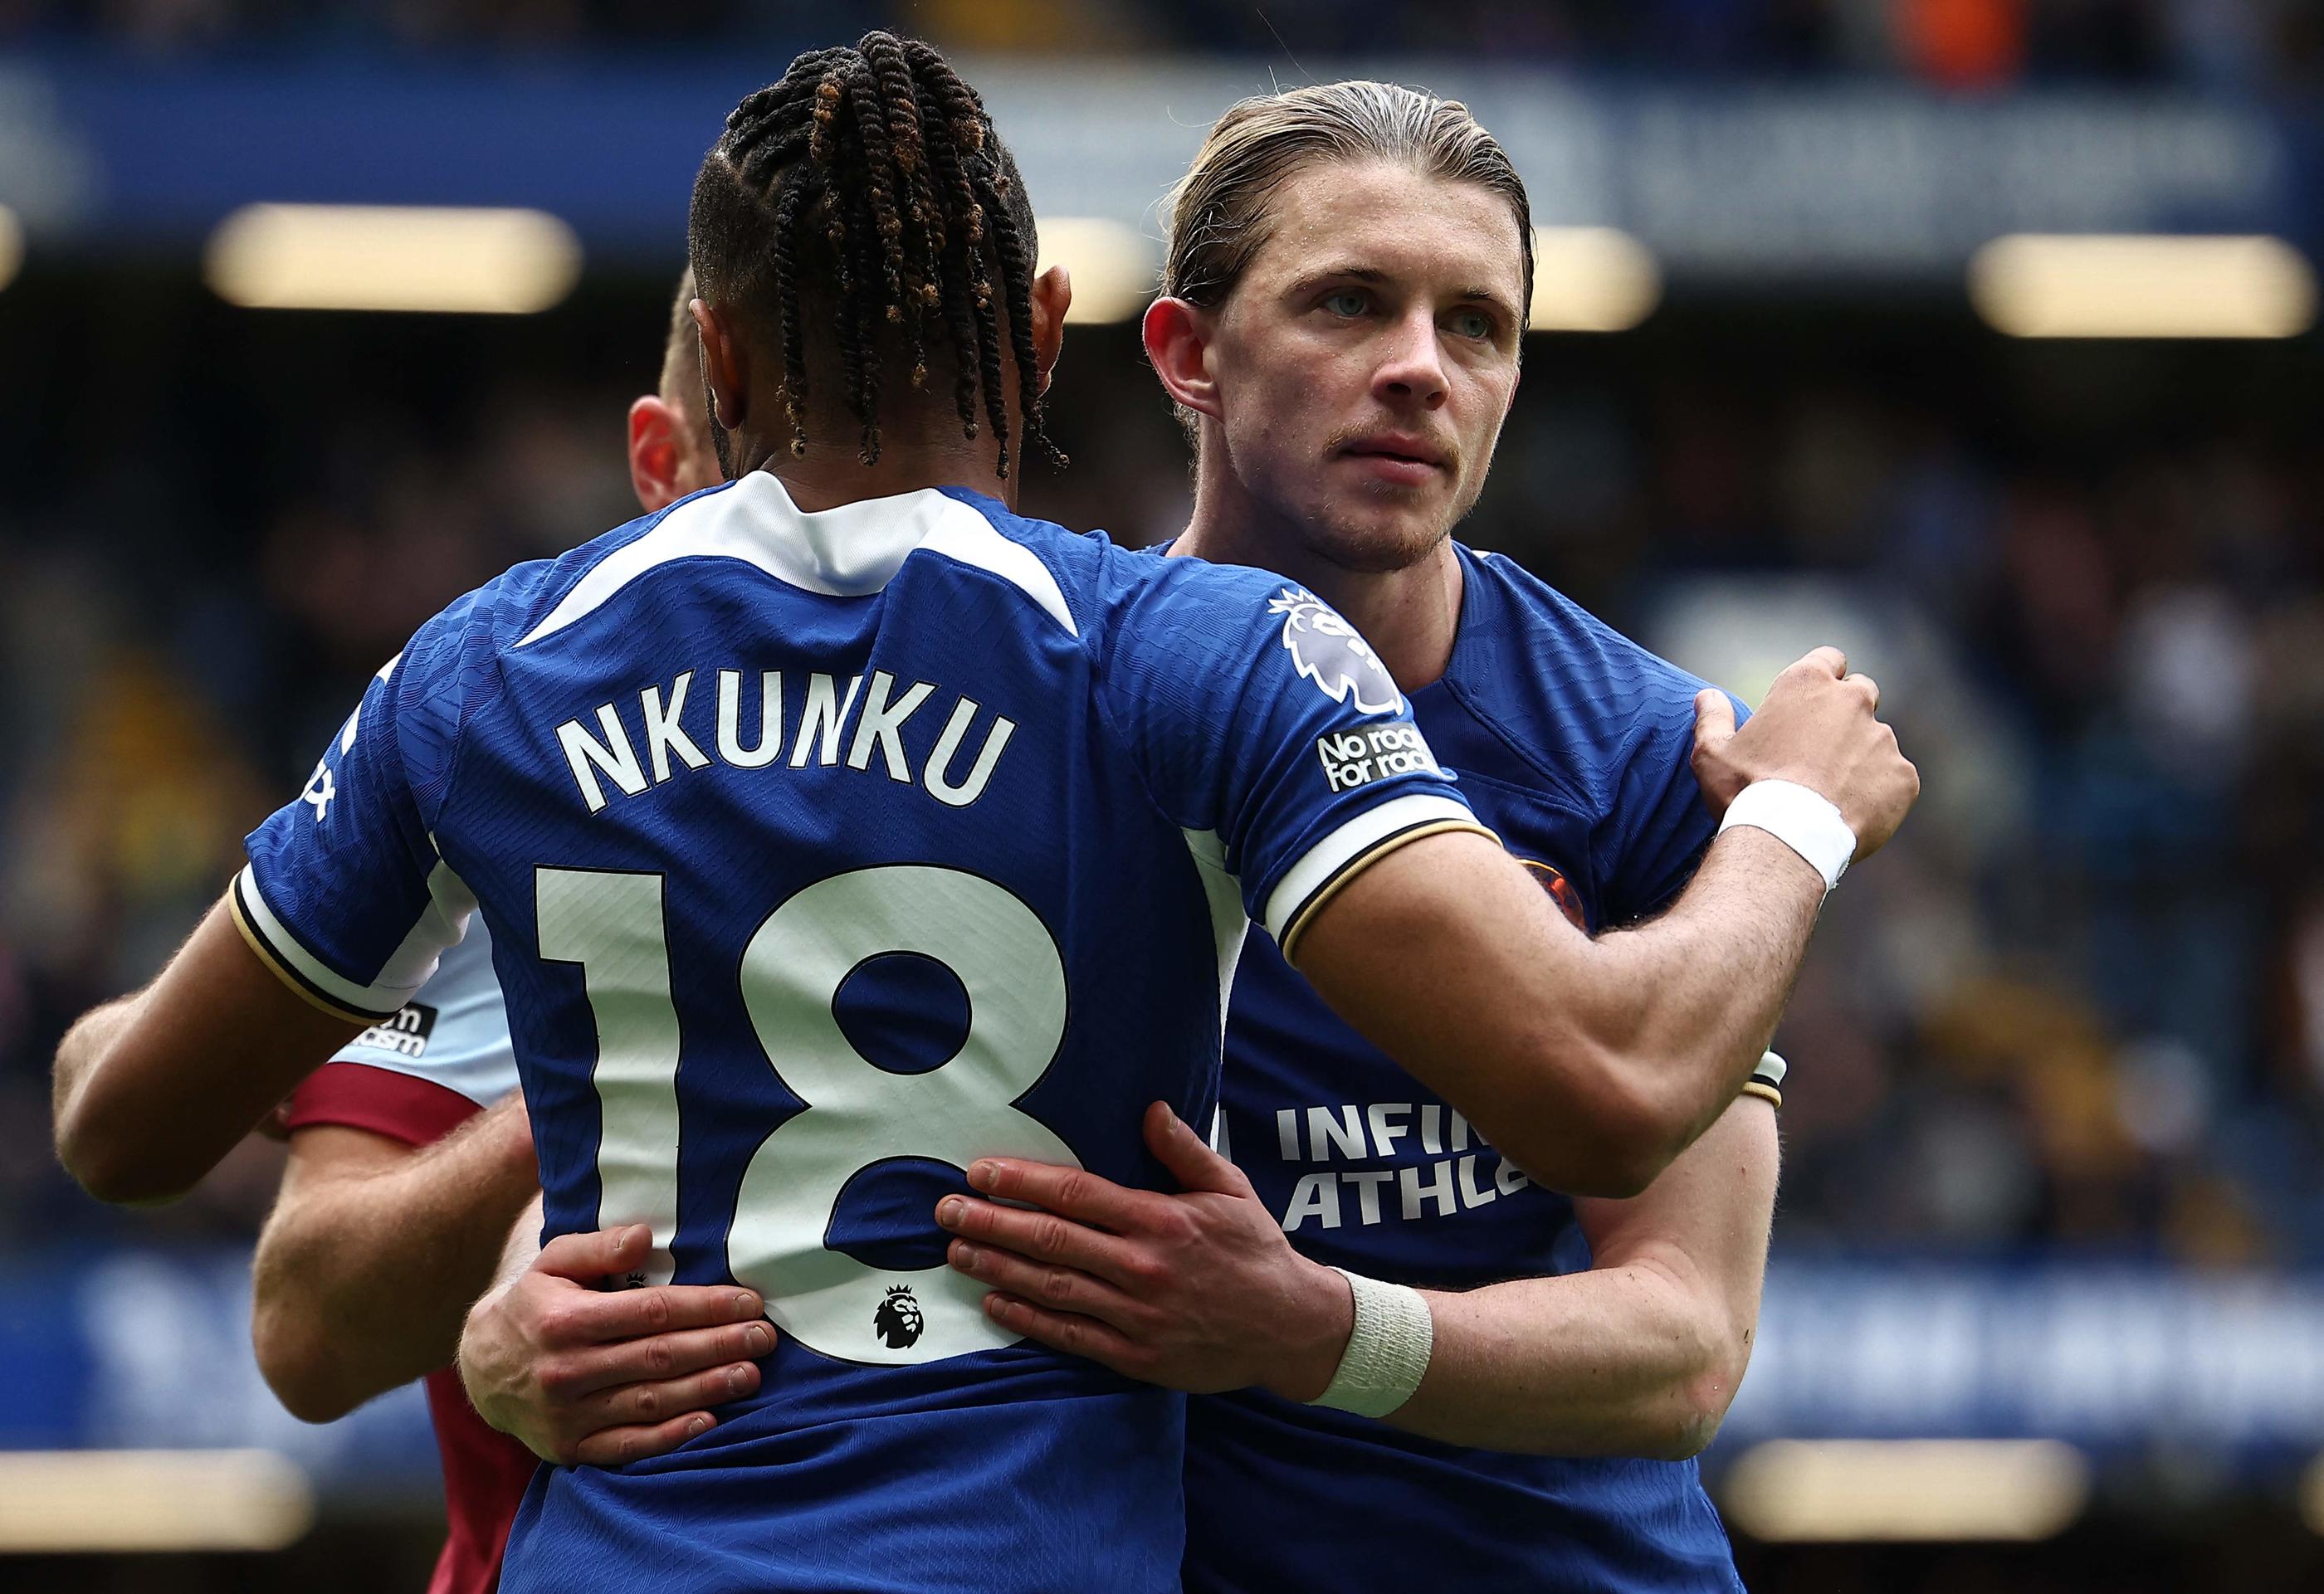 L'attaquant français est entré en jeu lors de la large victoire de Chelsea face à West Ham (5-0), ce dimanche. AFP/Henry Nicholls